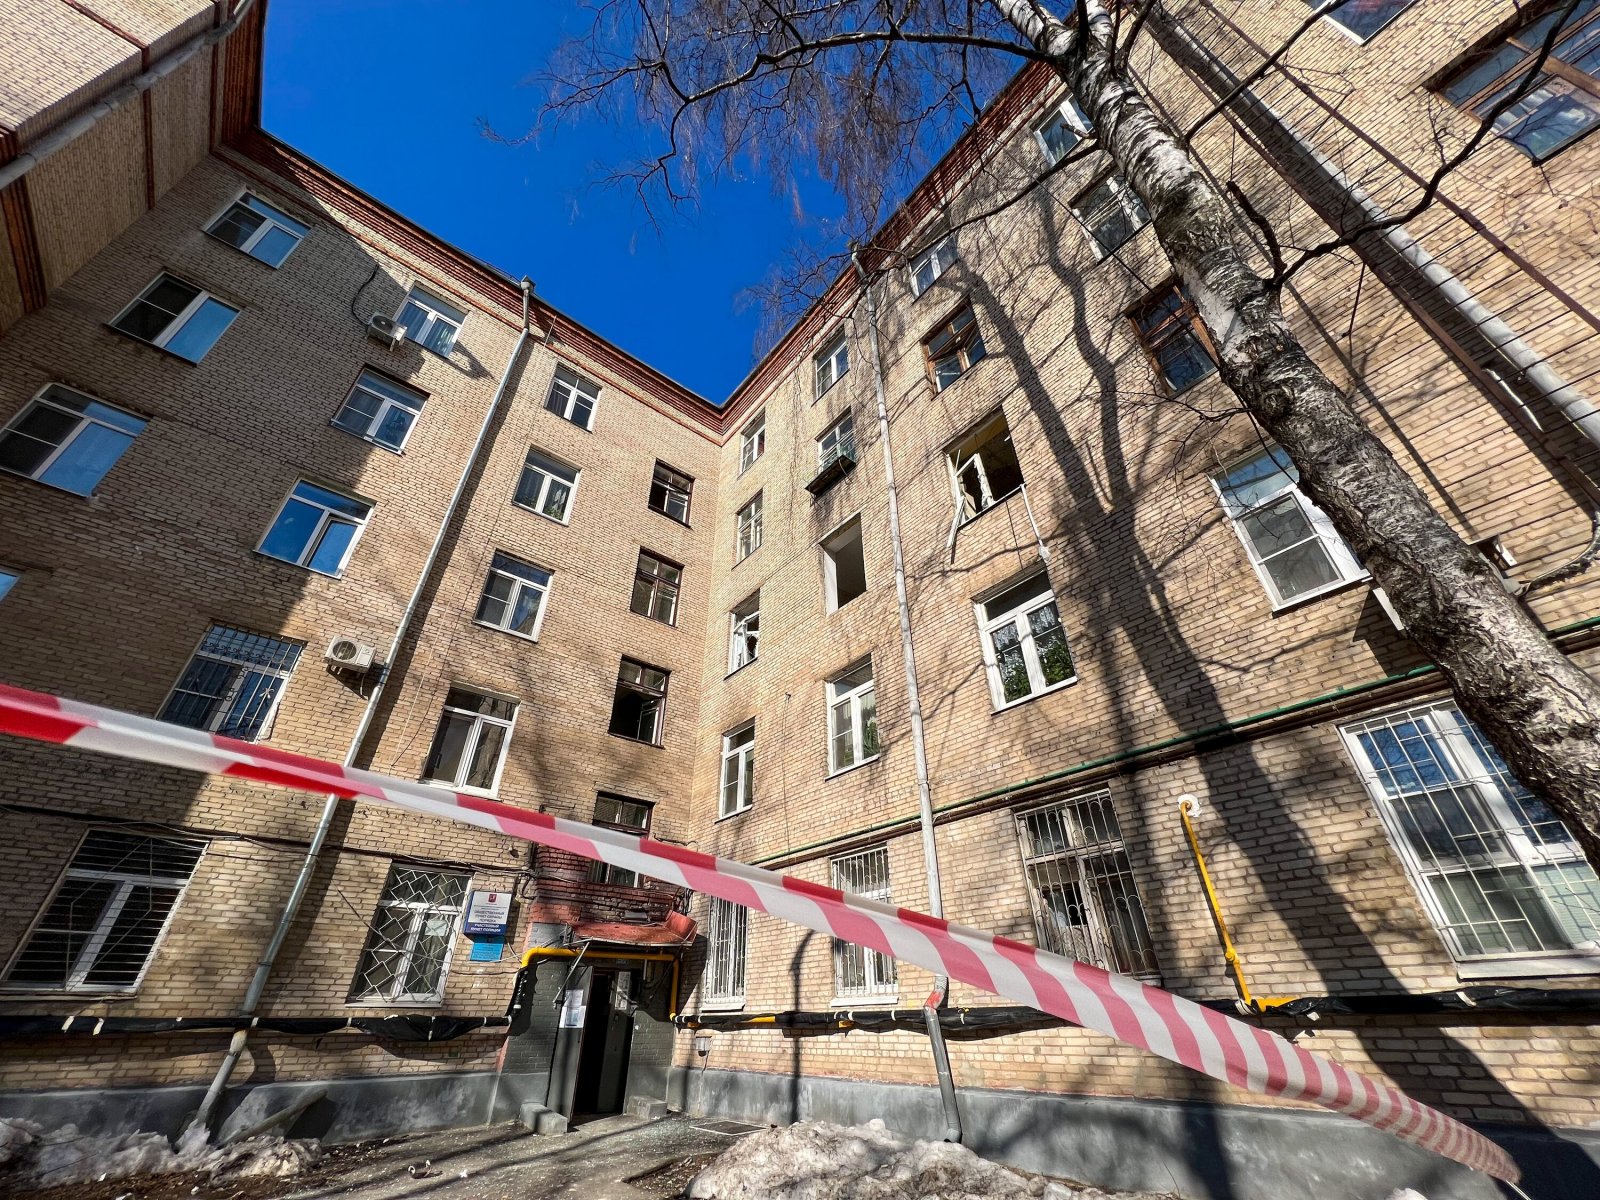 Психическое состояние пострадавшей женщины в инциденте с хлопком и обрушением в СЗАО Москвы проверят